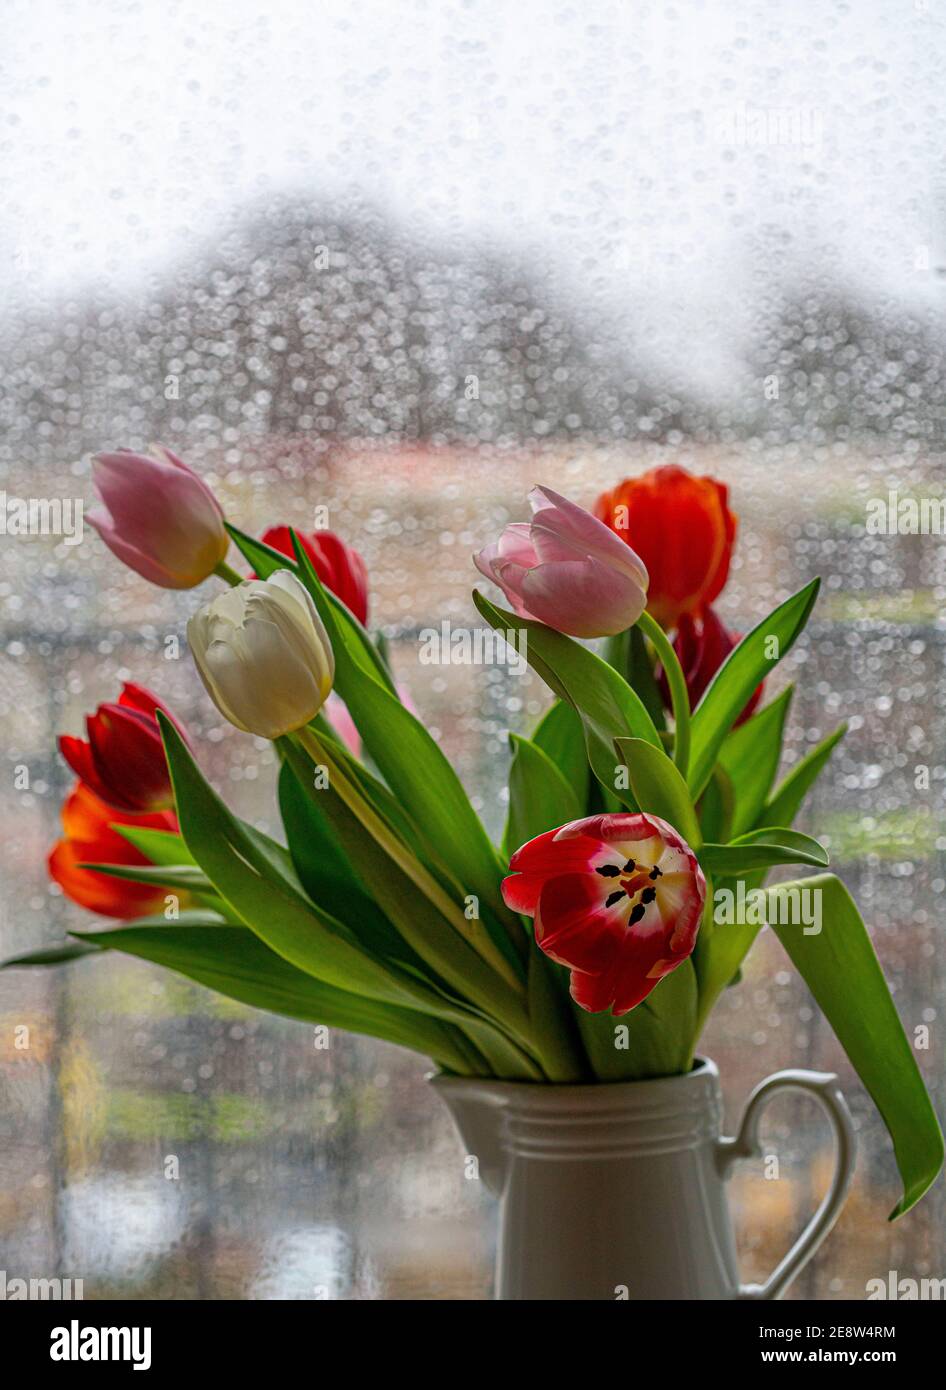 Regnerisches Wetter, Regentropfen auf einer Fensterscheibe, Blick aus einem regnerischen Fenster, Blumenvase mit bunten Tulpen, Stockfoto